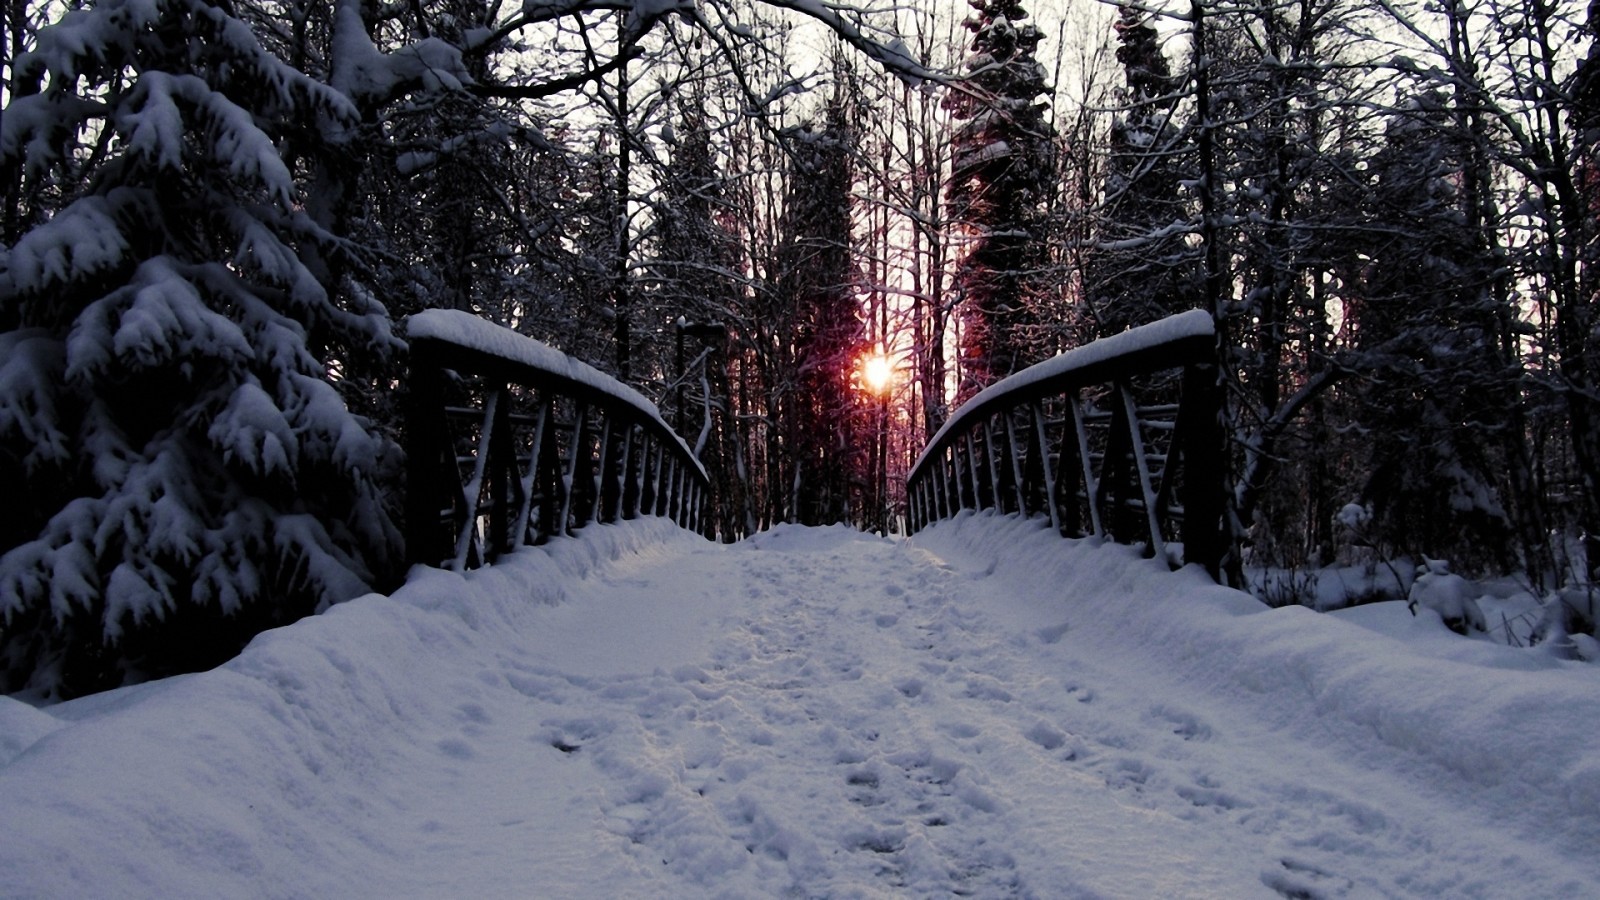 salju, hutan, jalan, pohon, Jembatan